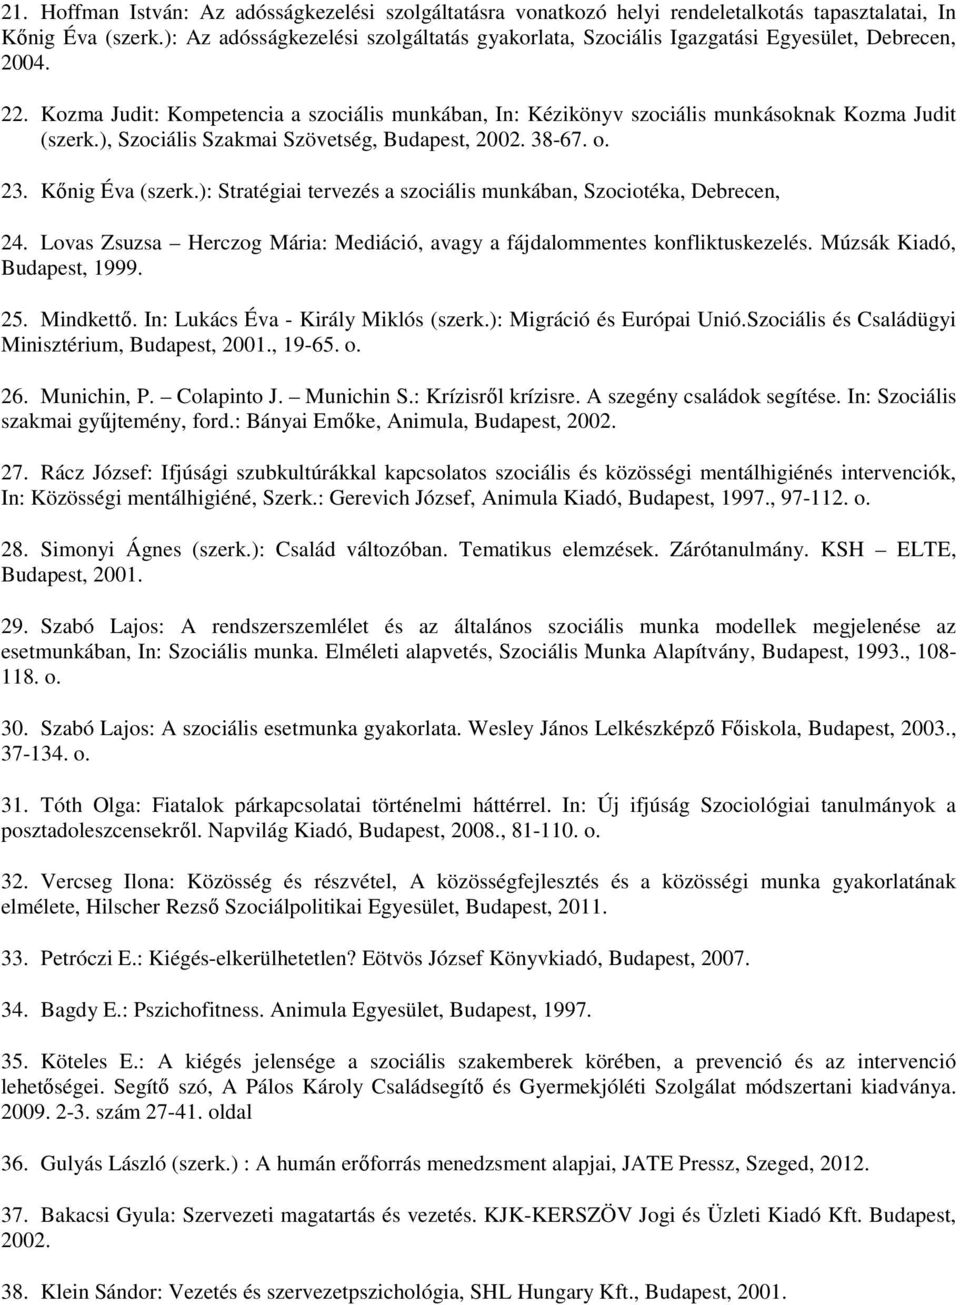 Kozma Judit: Kompetencia a szociális munkában, In: Kézikönyv szociális munkásoknak Kozma Judit (szerk.), Szociális Szakmai Szövetség, Budapest, 2002. 38-67. o. 23. Kőnig Éva (szerk.